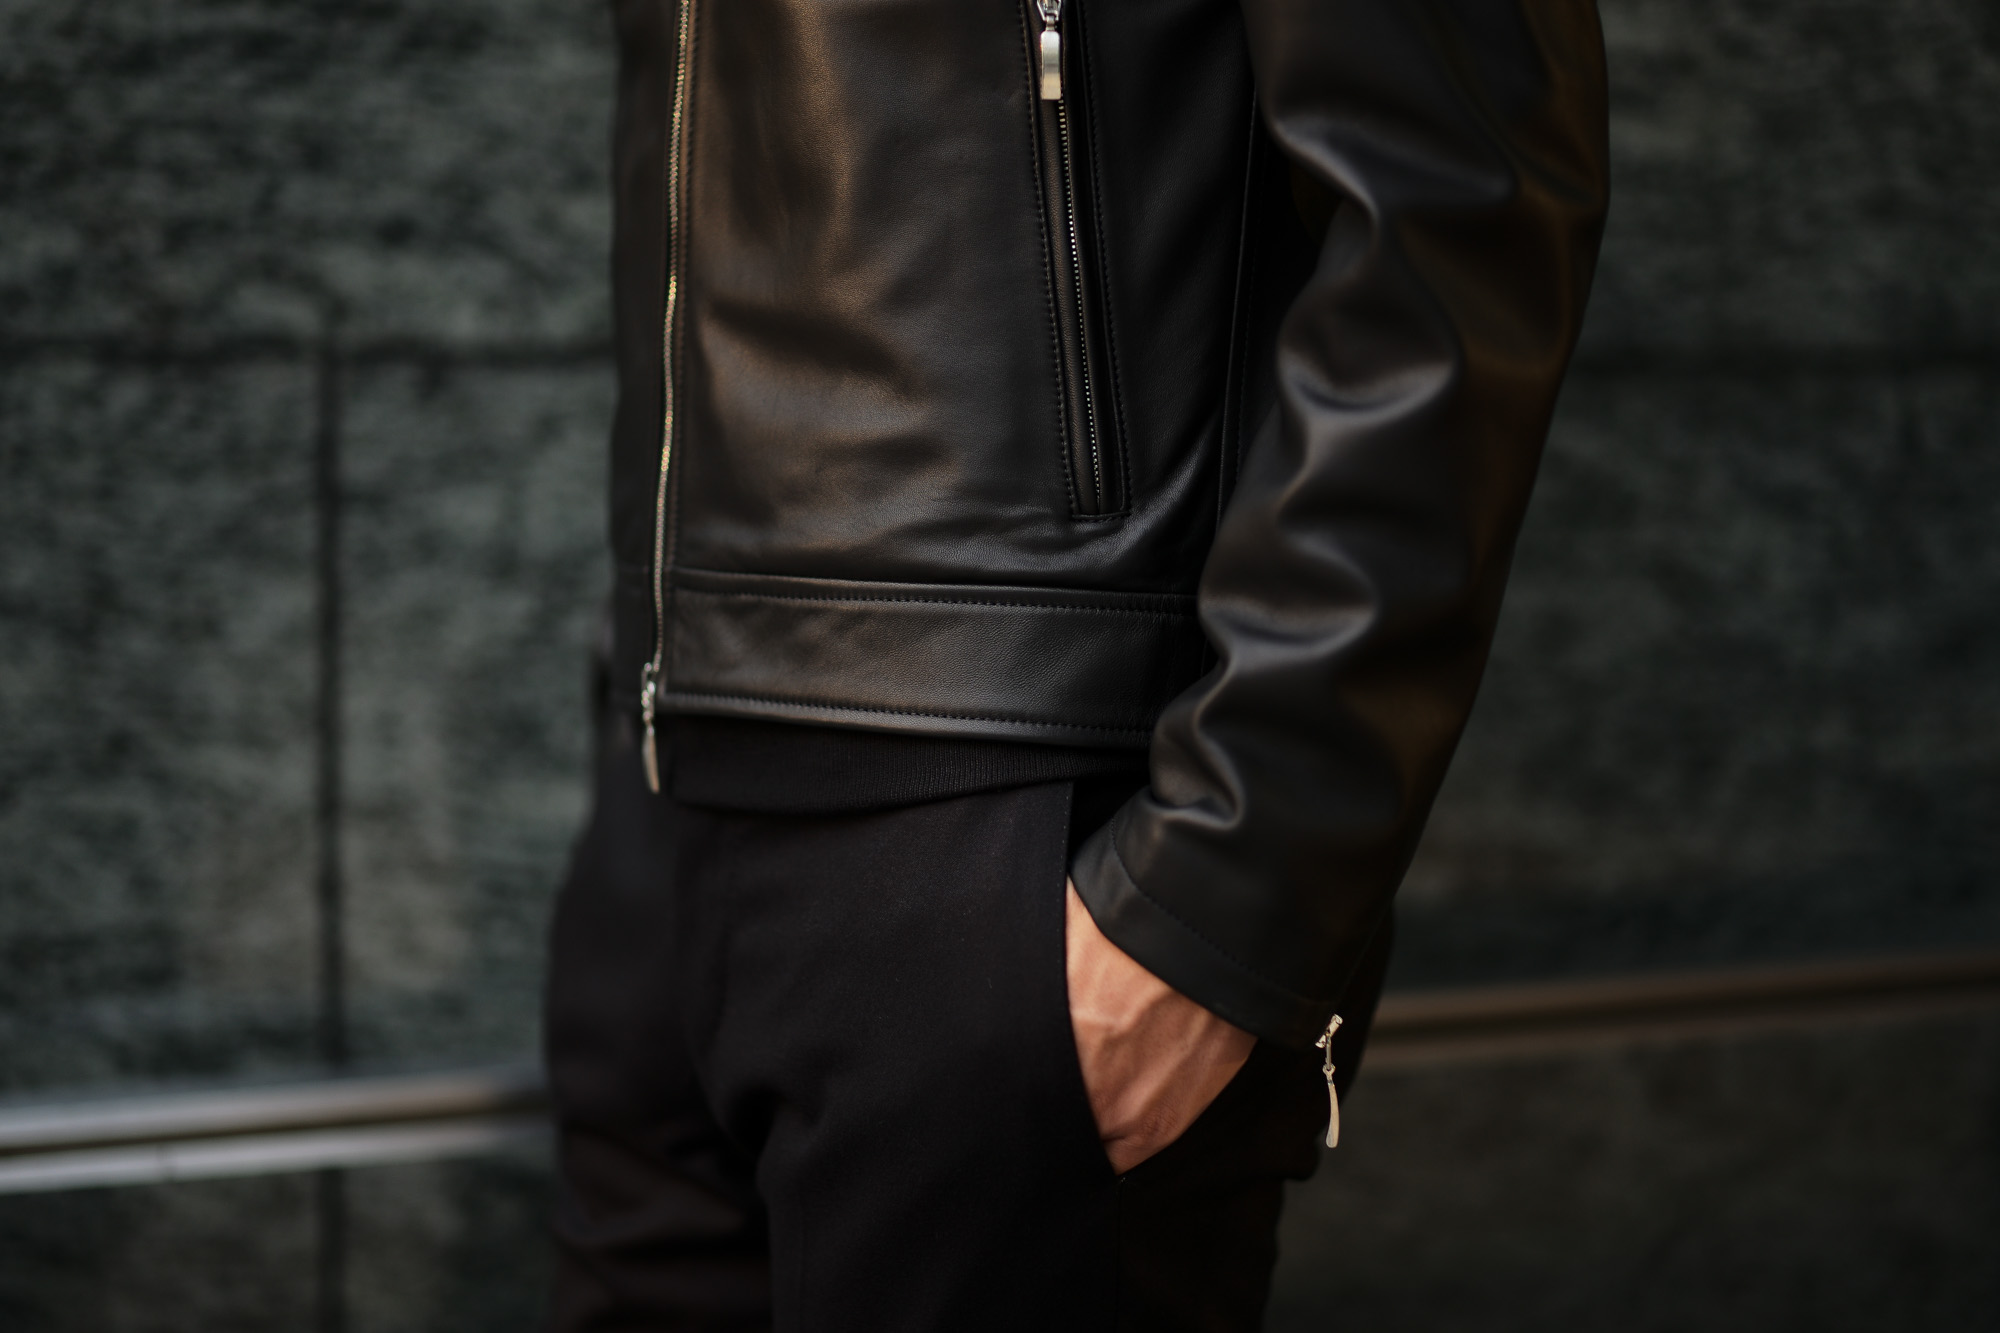 SILENCE (サイレンス) Single Leather Jacket (シングルレザー ジャケット) Goatskin Leather (ゴートスキンレザー) シングル ライダース ジャケット NERO (ブラック) Made in italy (イタリア製) 2019　秋冬新作 愛知 名古屋 altoediritto アルトエデリット